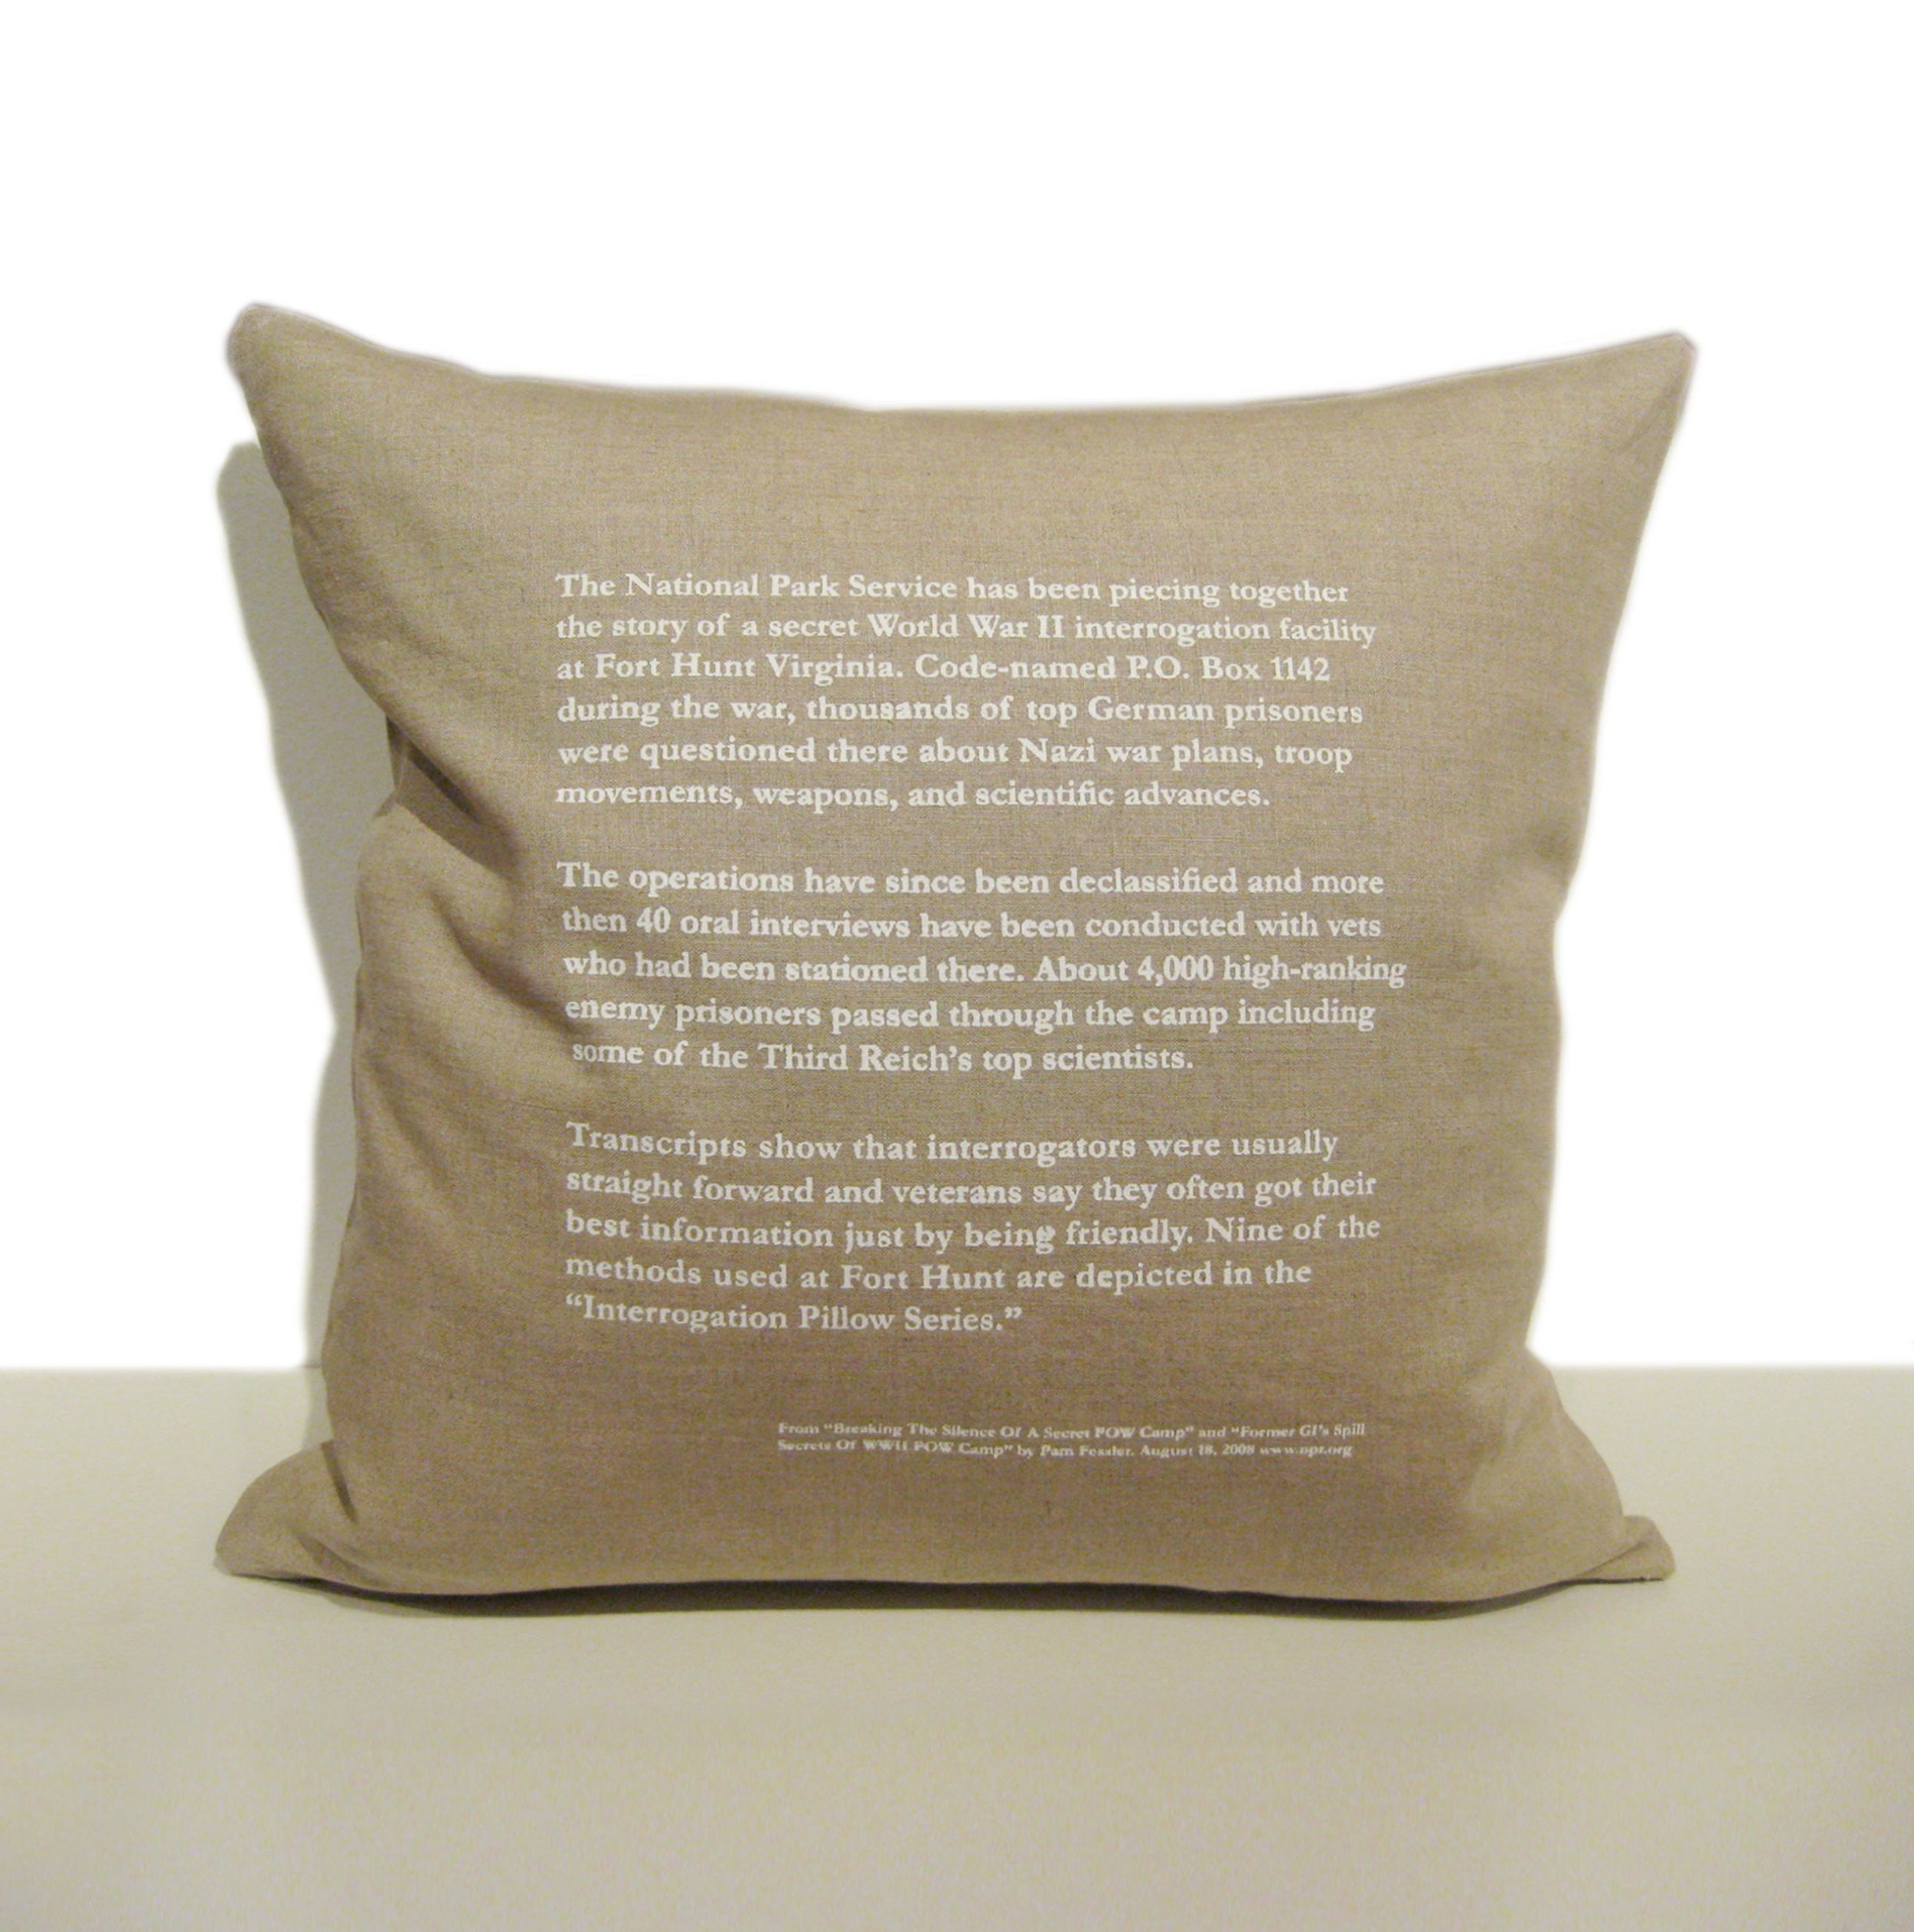    Interrogation Pillow Series  &nbsp;Back view of pillows 